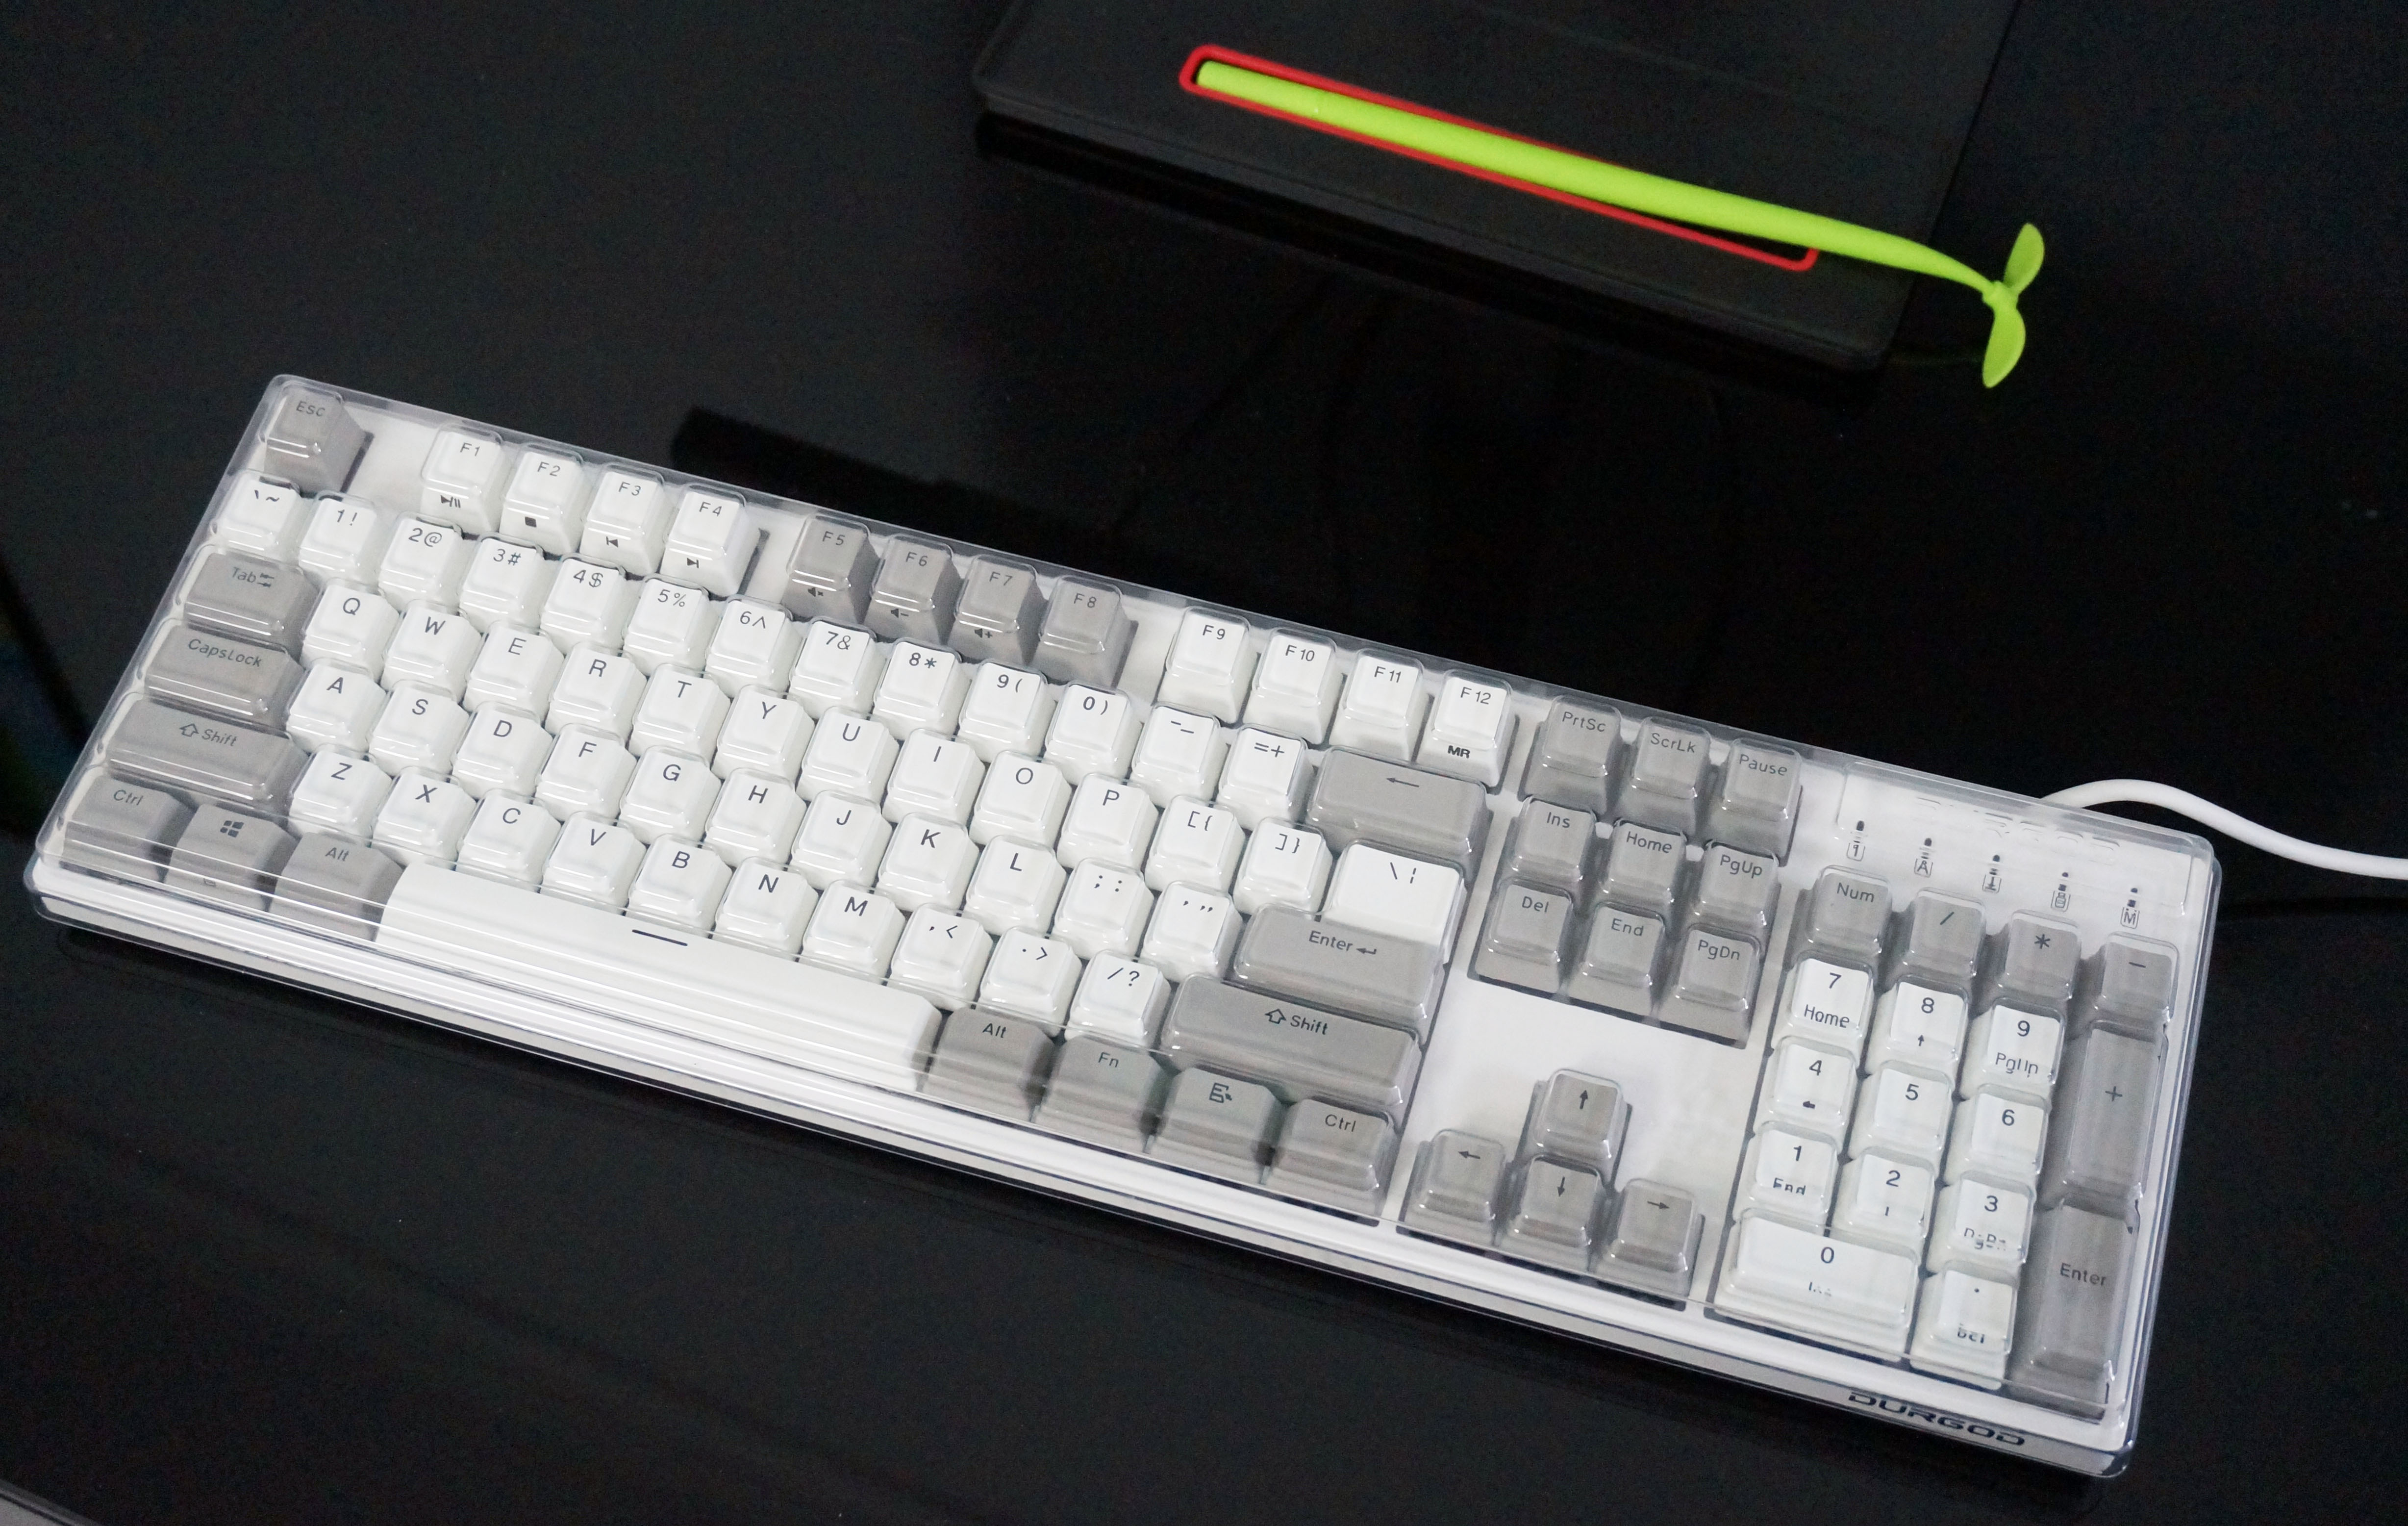 简约美观超强静音舒适度更高杜伽k310机械键盘简单上手